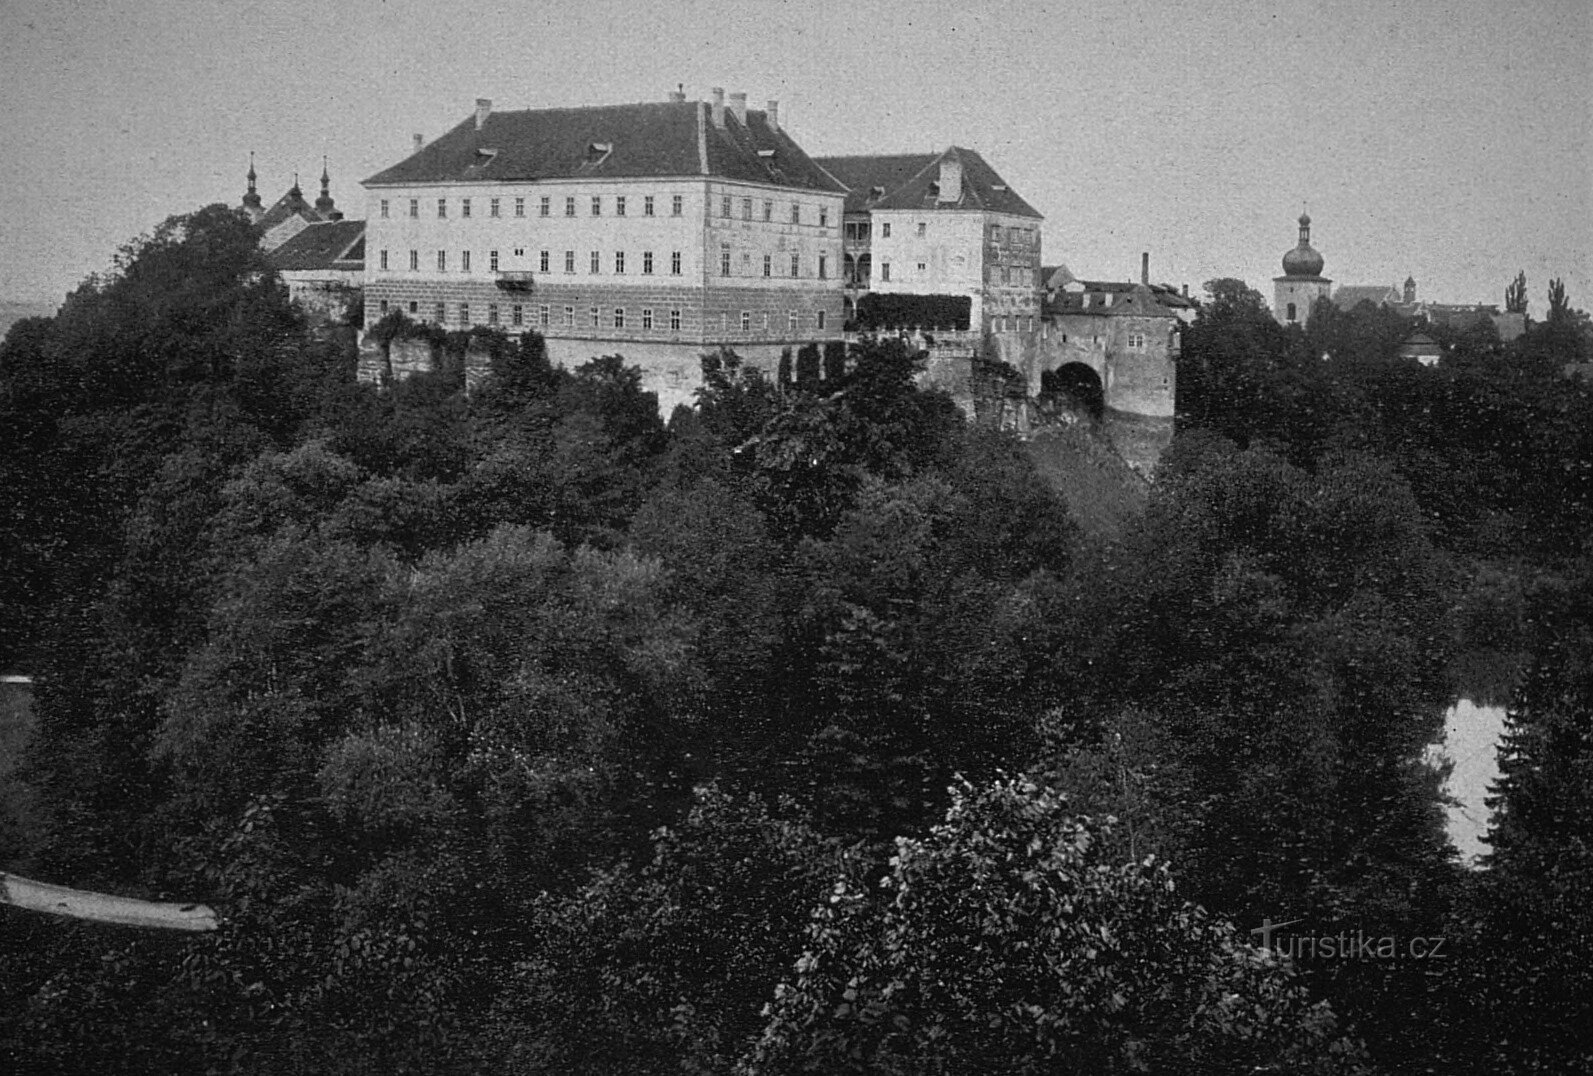 Κάστρο στο Opočno το 1910 (η εκκλησία της Αγίας Τριάδας βρίσκεται στην επάνω αριστερή γωνία)